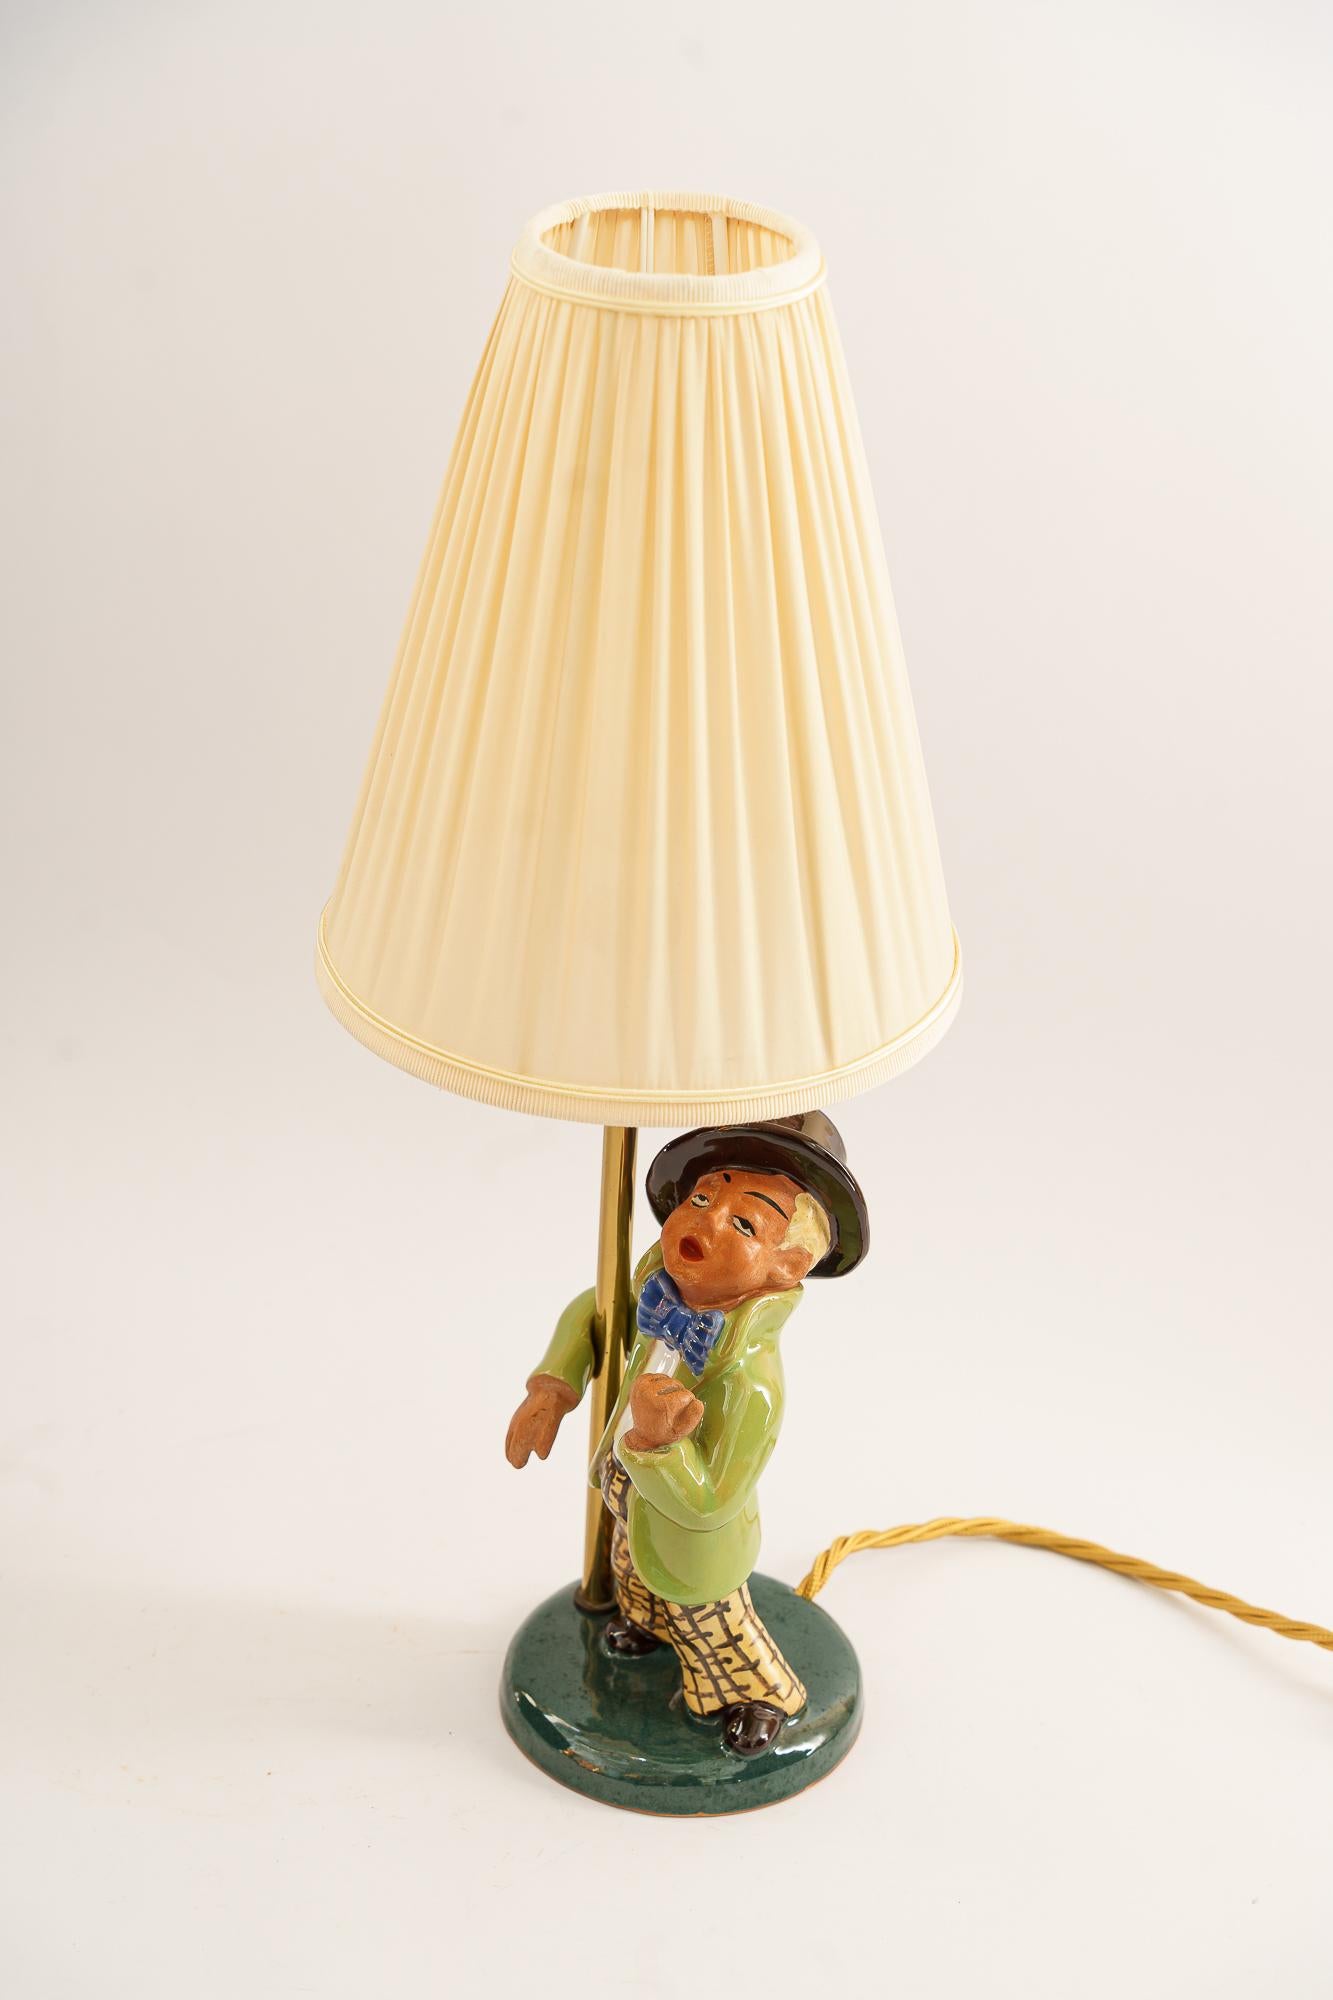 fisherman lamp